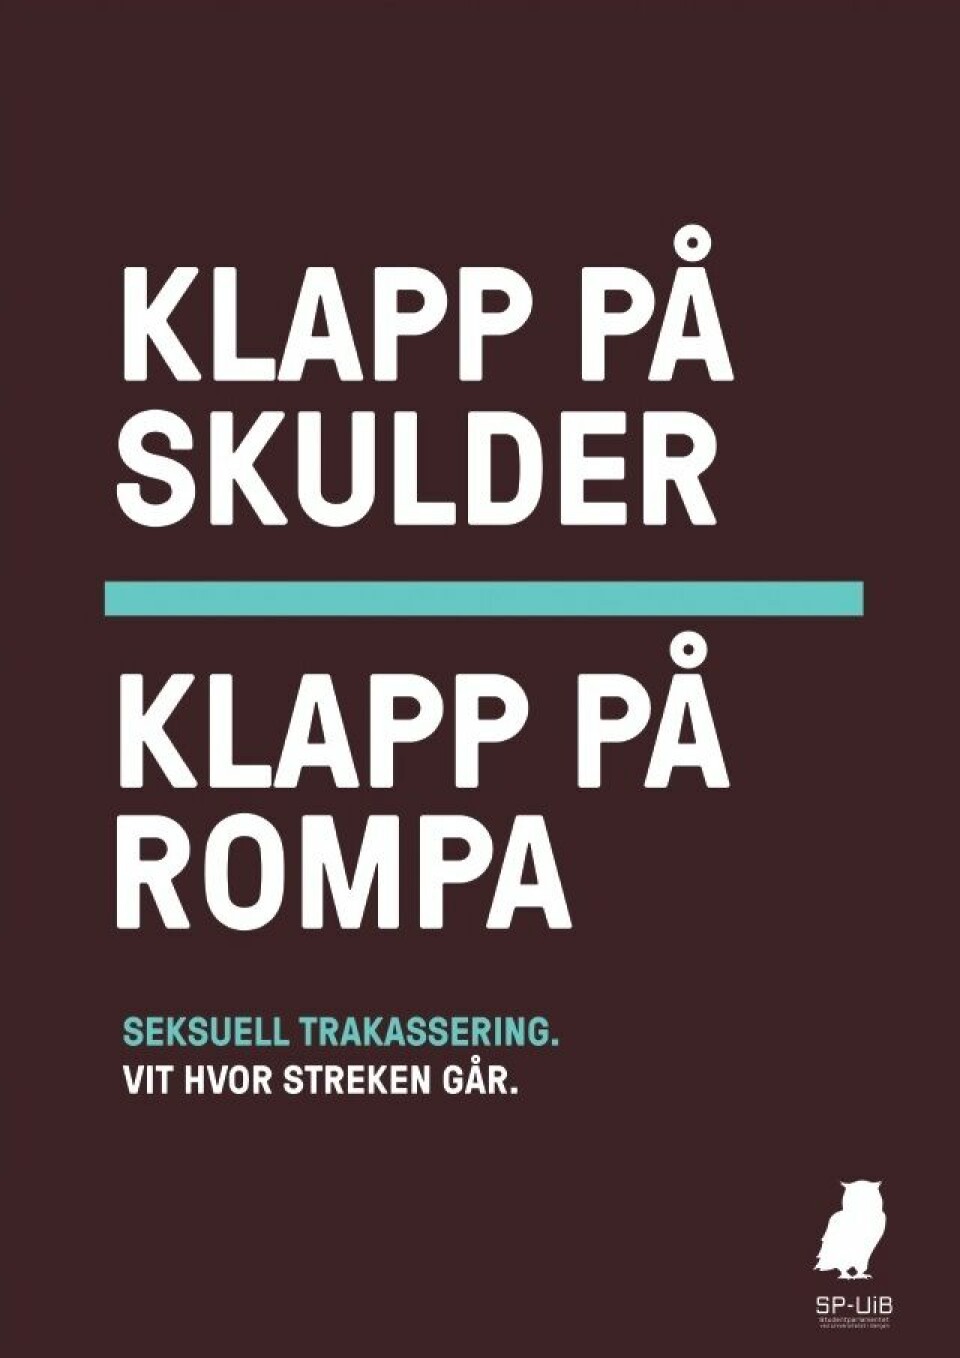 KAMPANJE. Studentorganisasjonane får hjelp til å setta seksuell trakassering i fokus, mellom anna gjennom kampanjen «Aldri OK» frå Studentparlamentet ved Universitetet i Bergen. FOTO: SP-UIB.